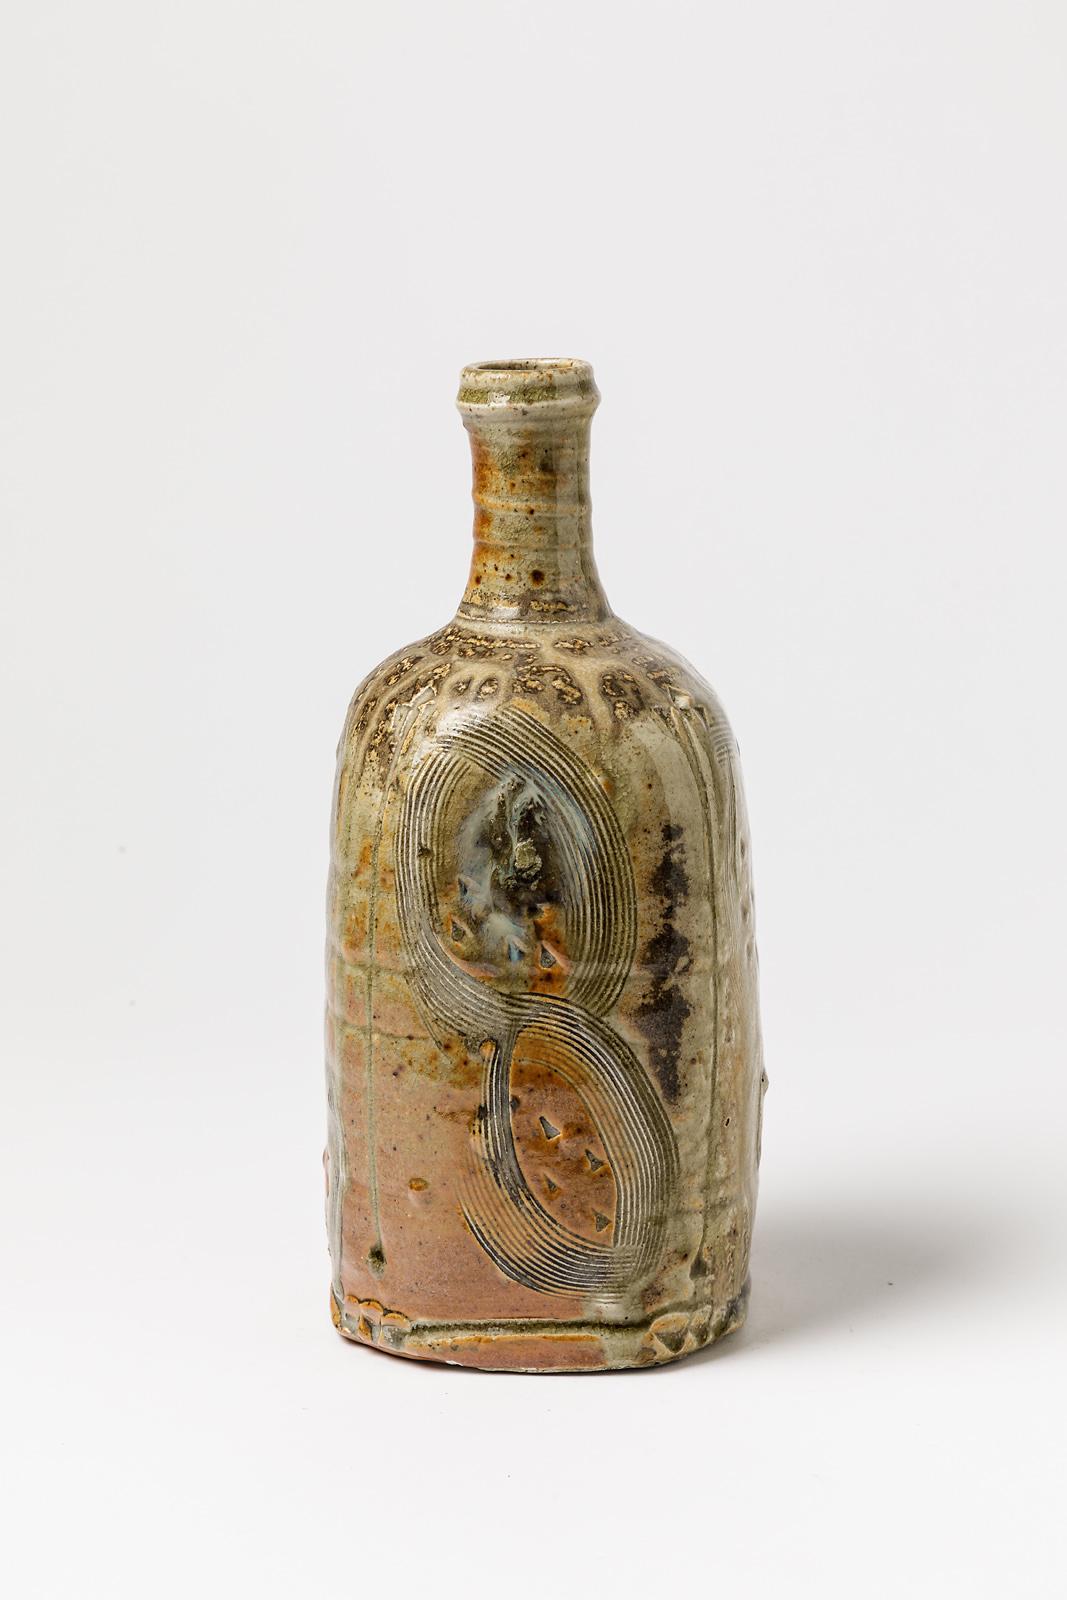 20th Century Stoneware Colored Ceramic Bottle or Vase by D Garet La Borne circa 1990 For Sale